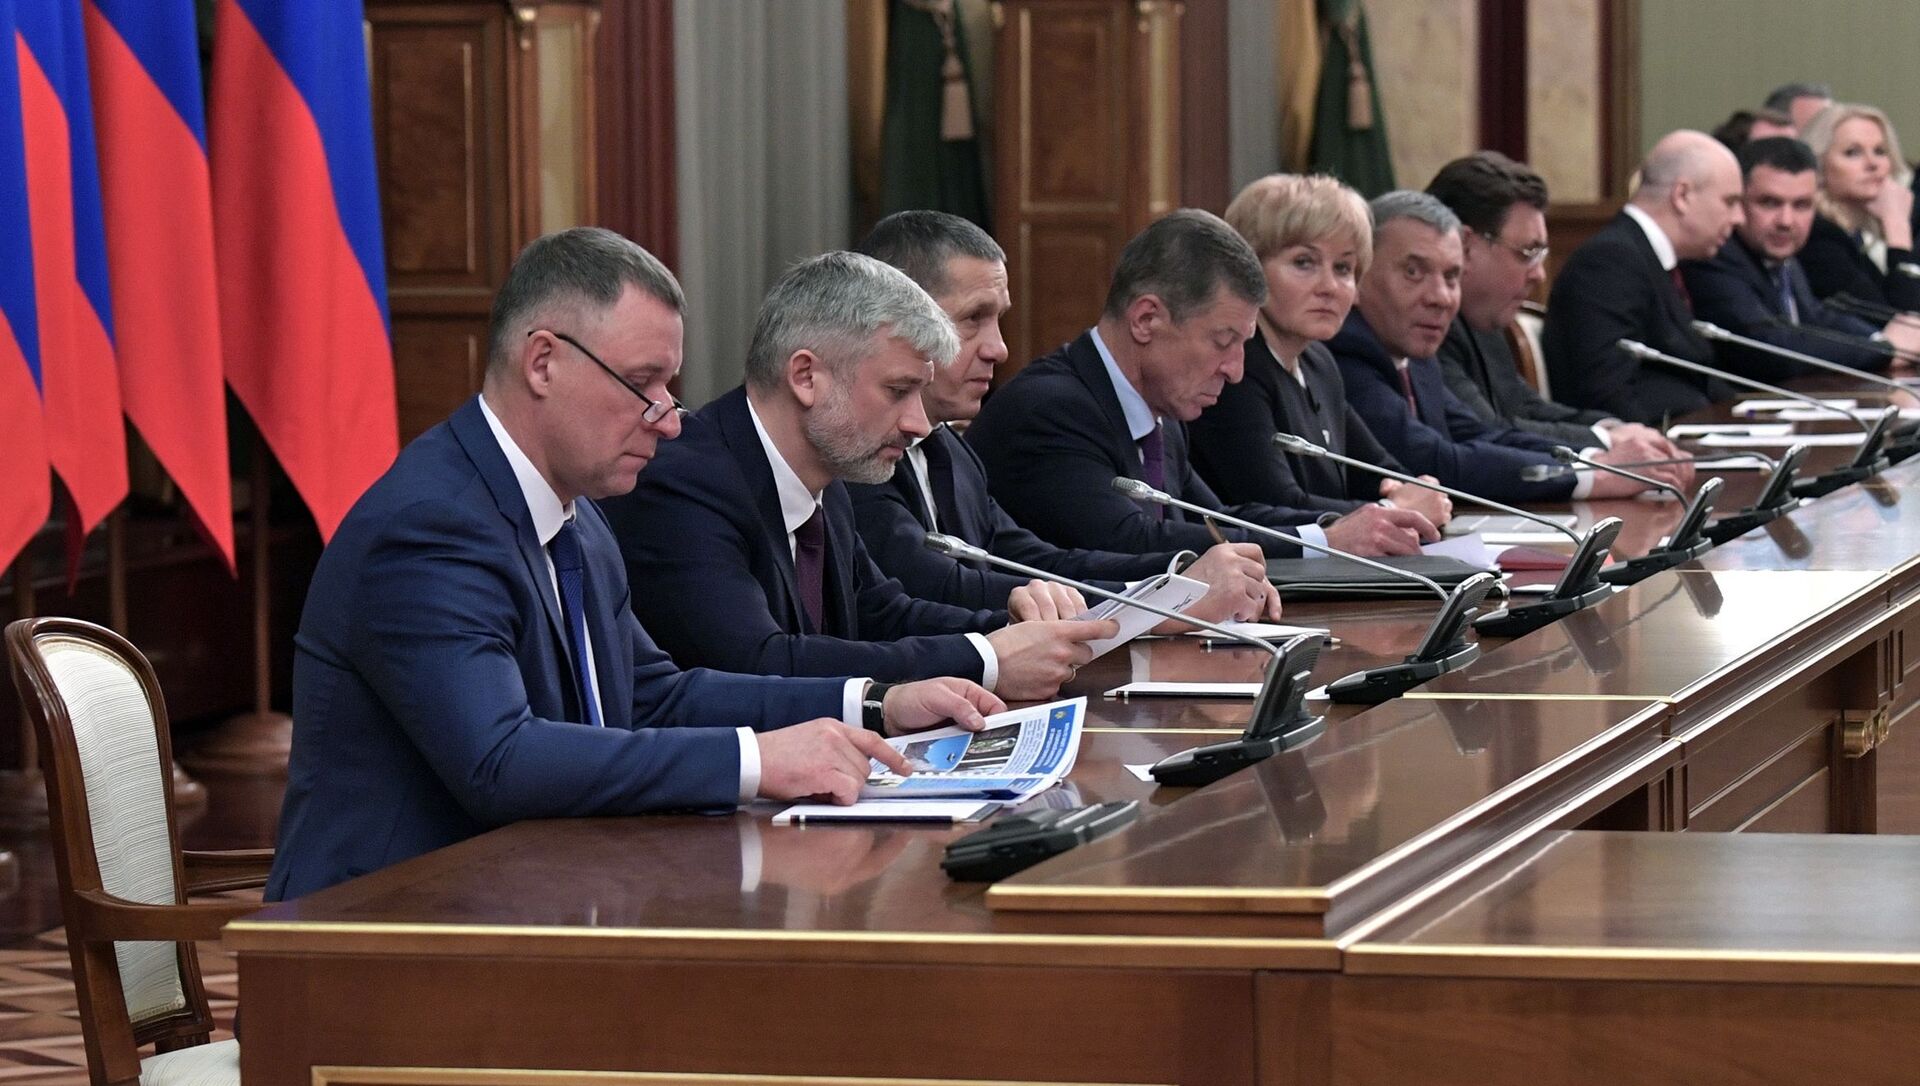 Премьер министр и вице премьеры. Правительство Медведева 2018. Кабинет министров России.